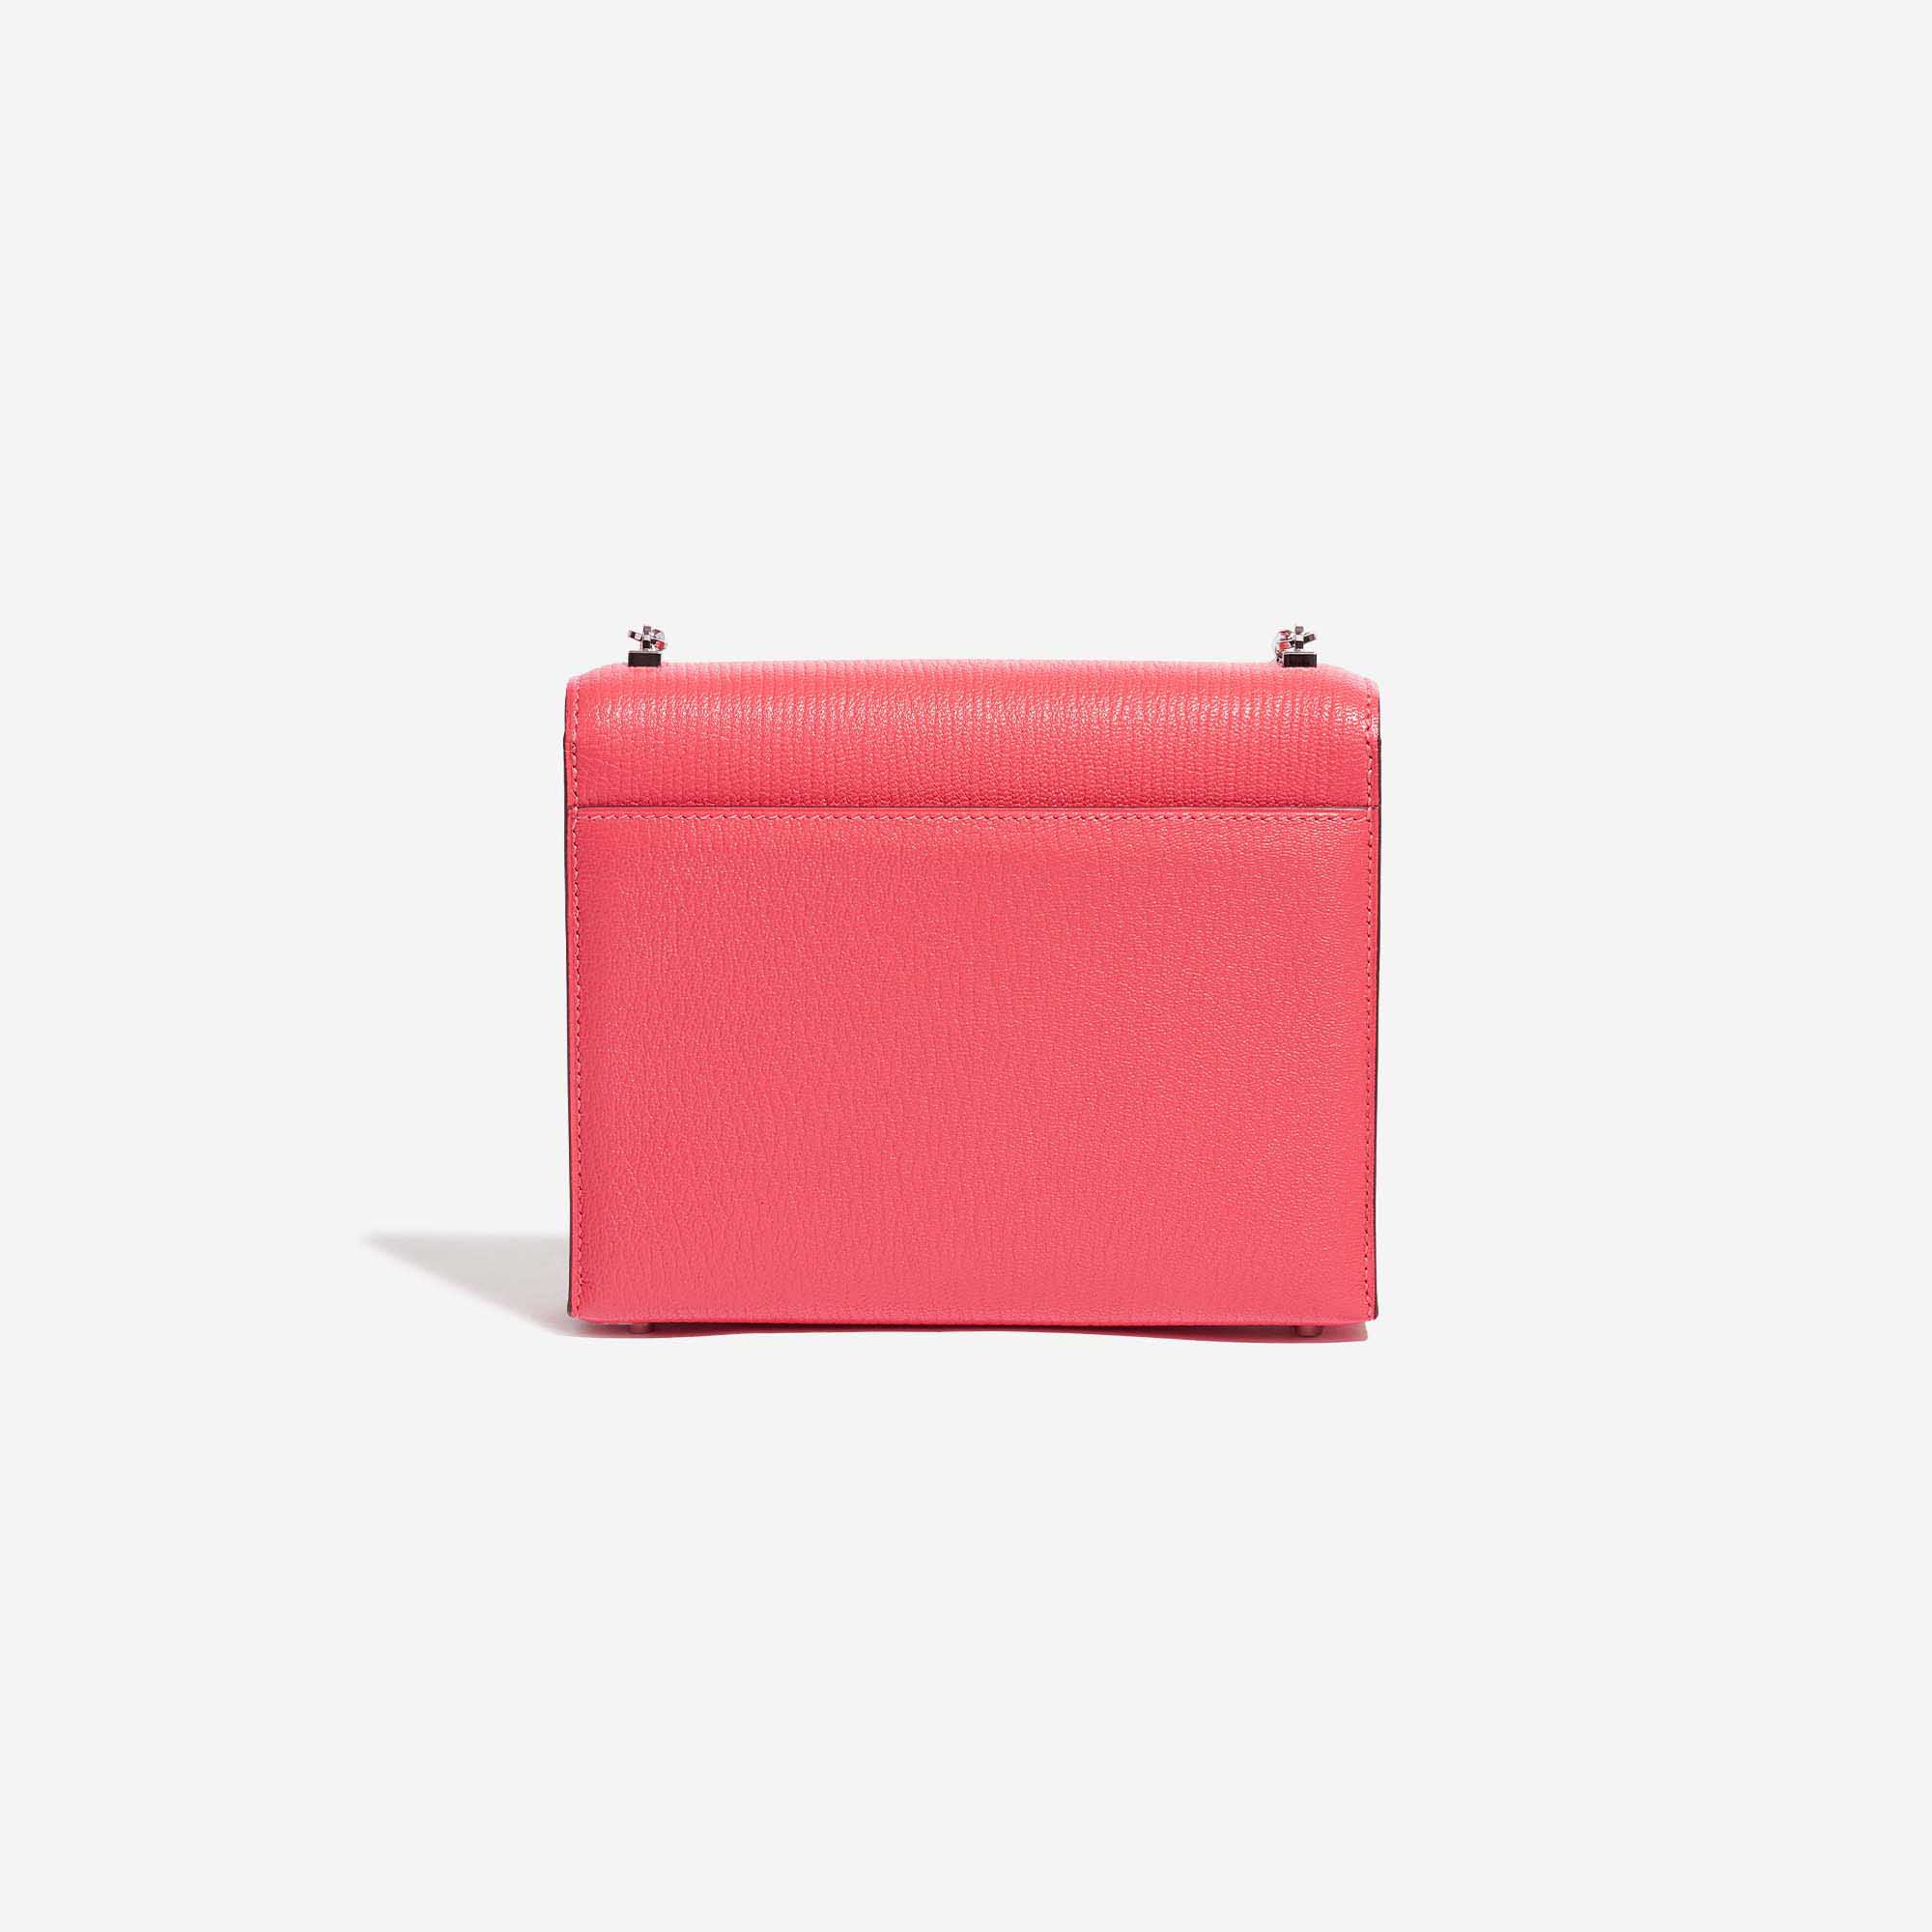 Gebrauchte Hermès Tasche Verrou Chaine Mini Chèvre Mysore Lipstick Pink Back | Verkaufen Sie Ihre Designer-Tasche auf Saclab.com